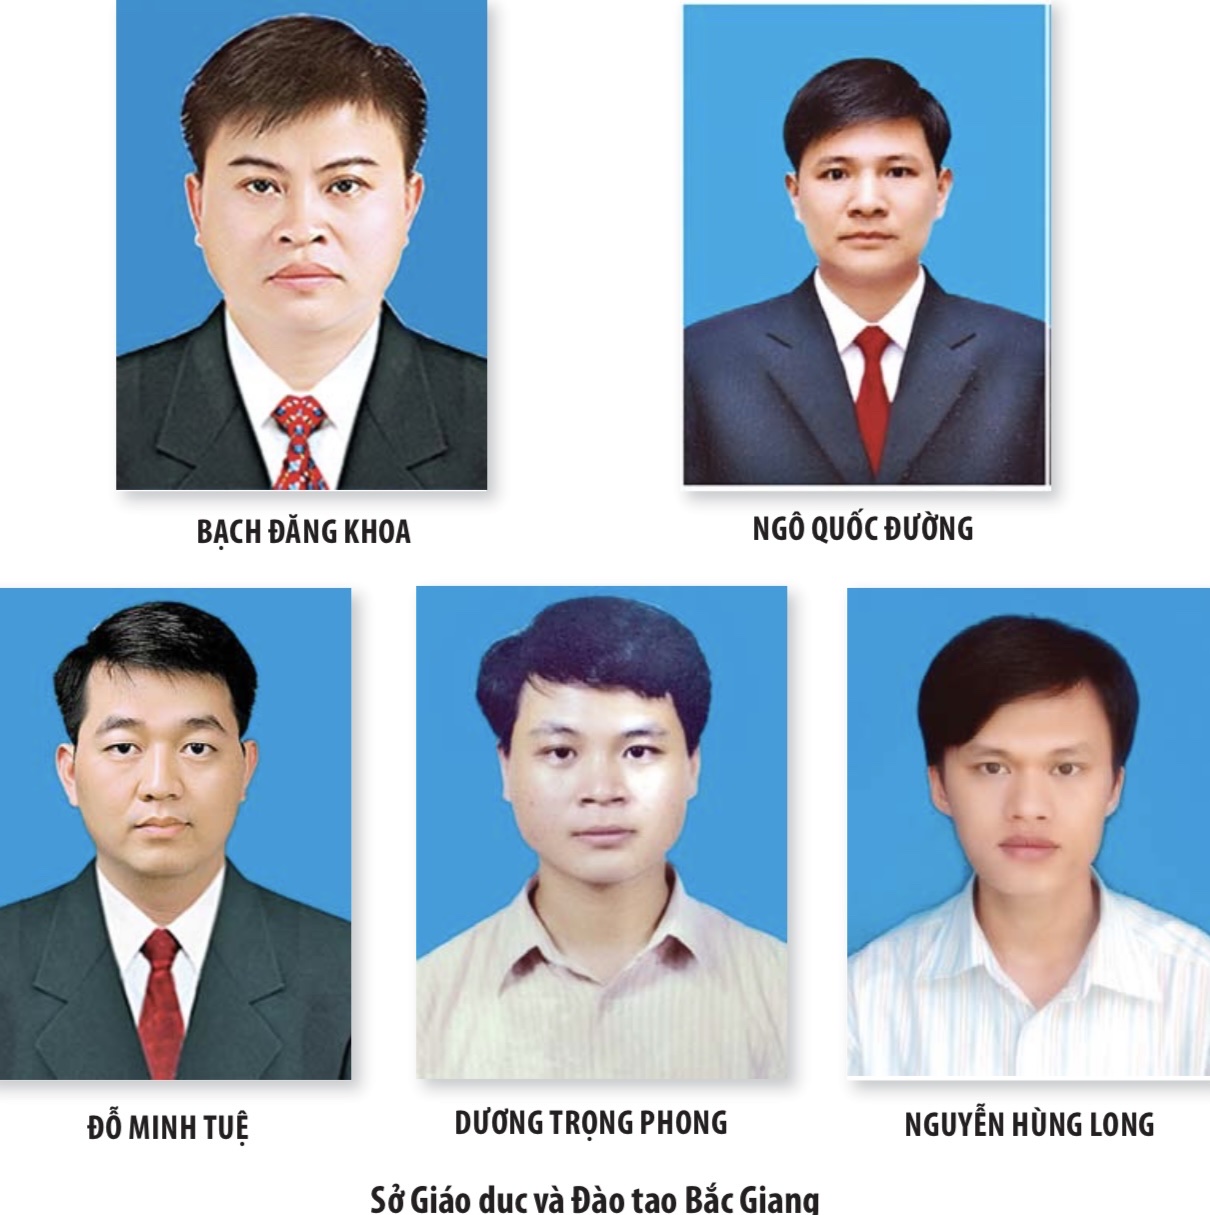 Hướng dẫn học sinh trung học tiếp cận và thực hiện giải quyết thủ tục hành chính trực tuyến trên địa bàn tỉnh Bắc Giang